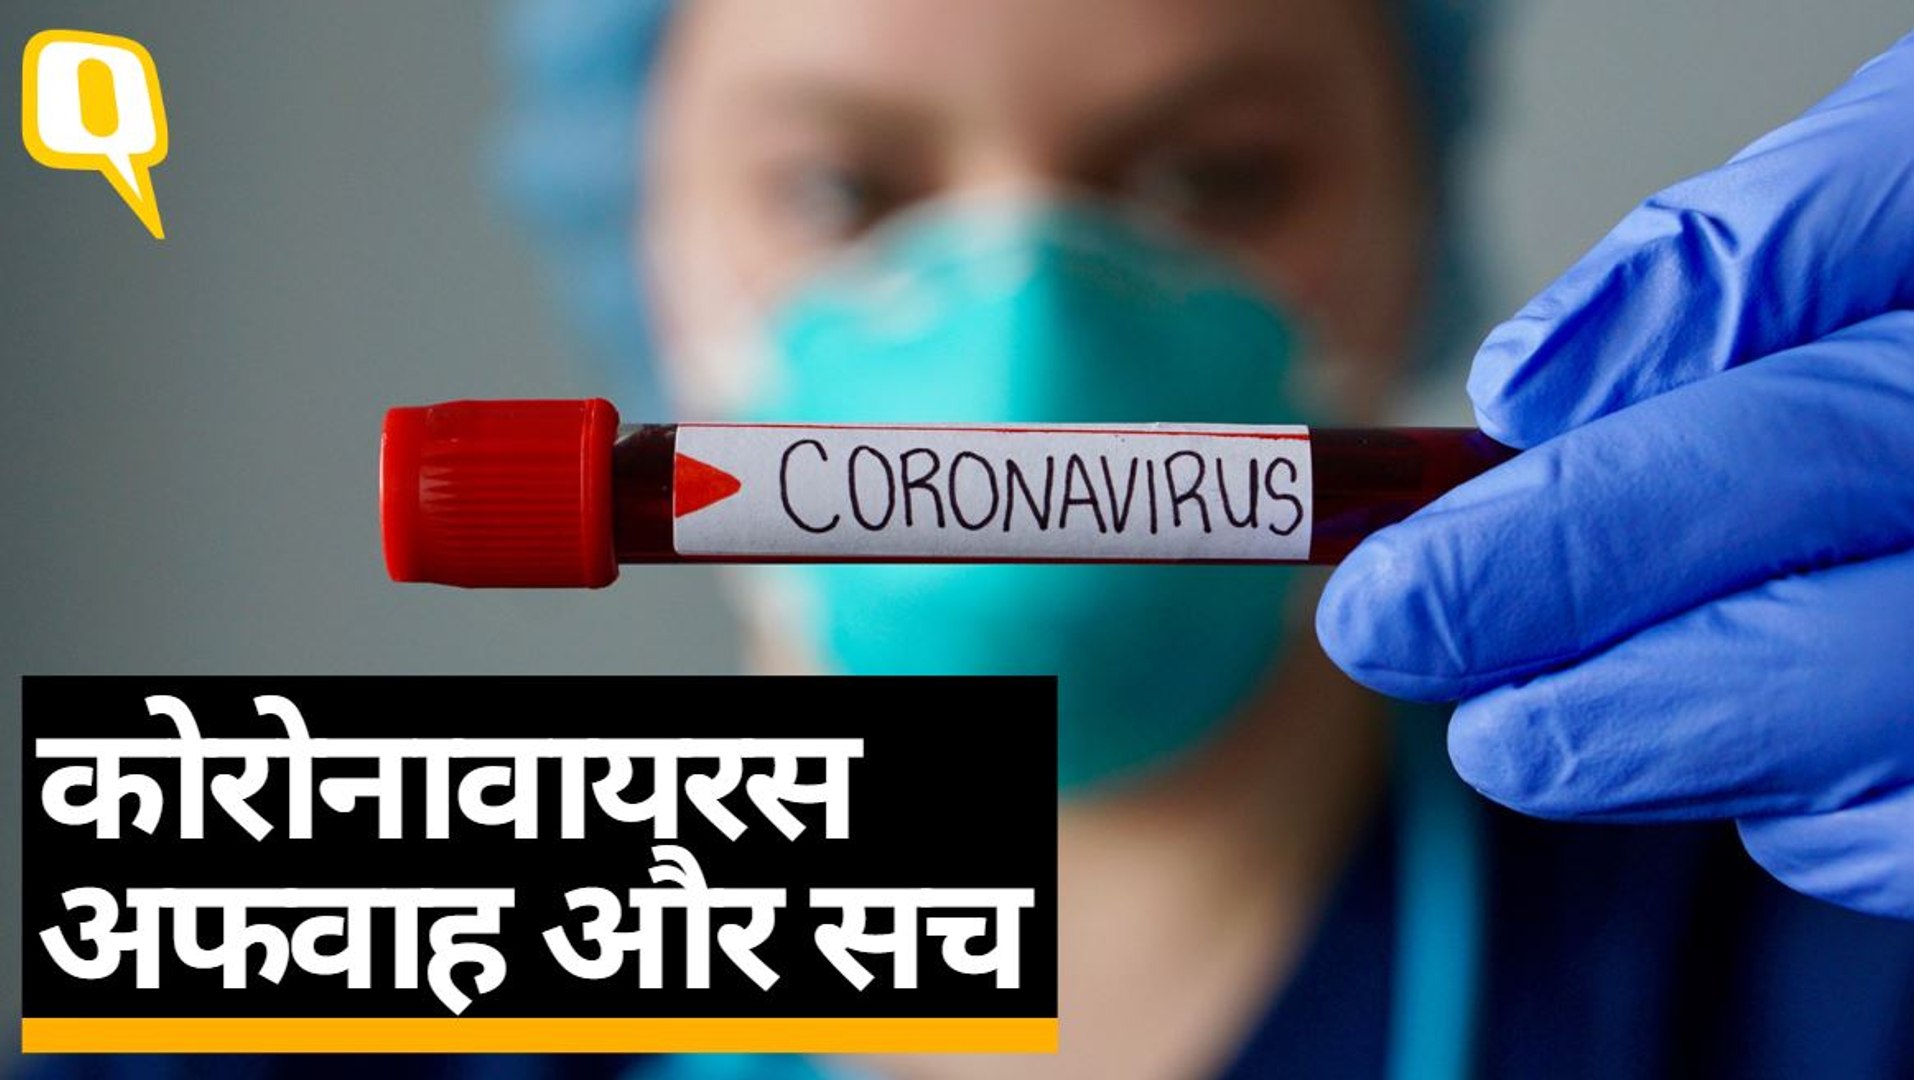 नए Coronavirus के बारे में हम क्या जानते हैं और क्या नहीं